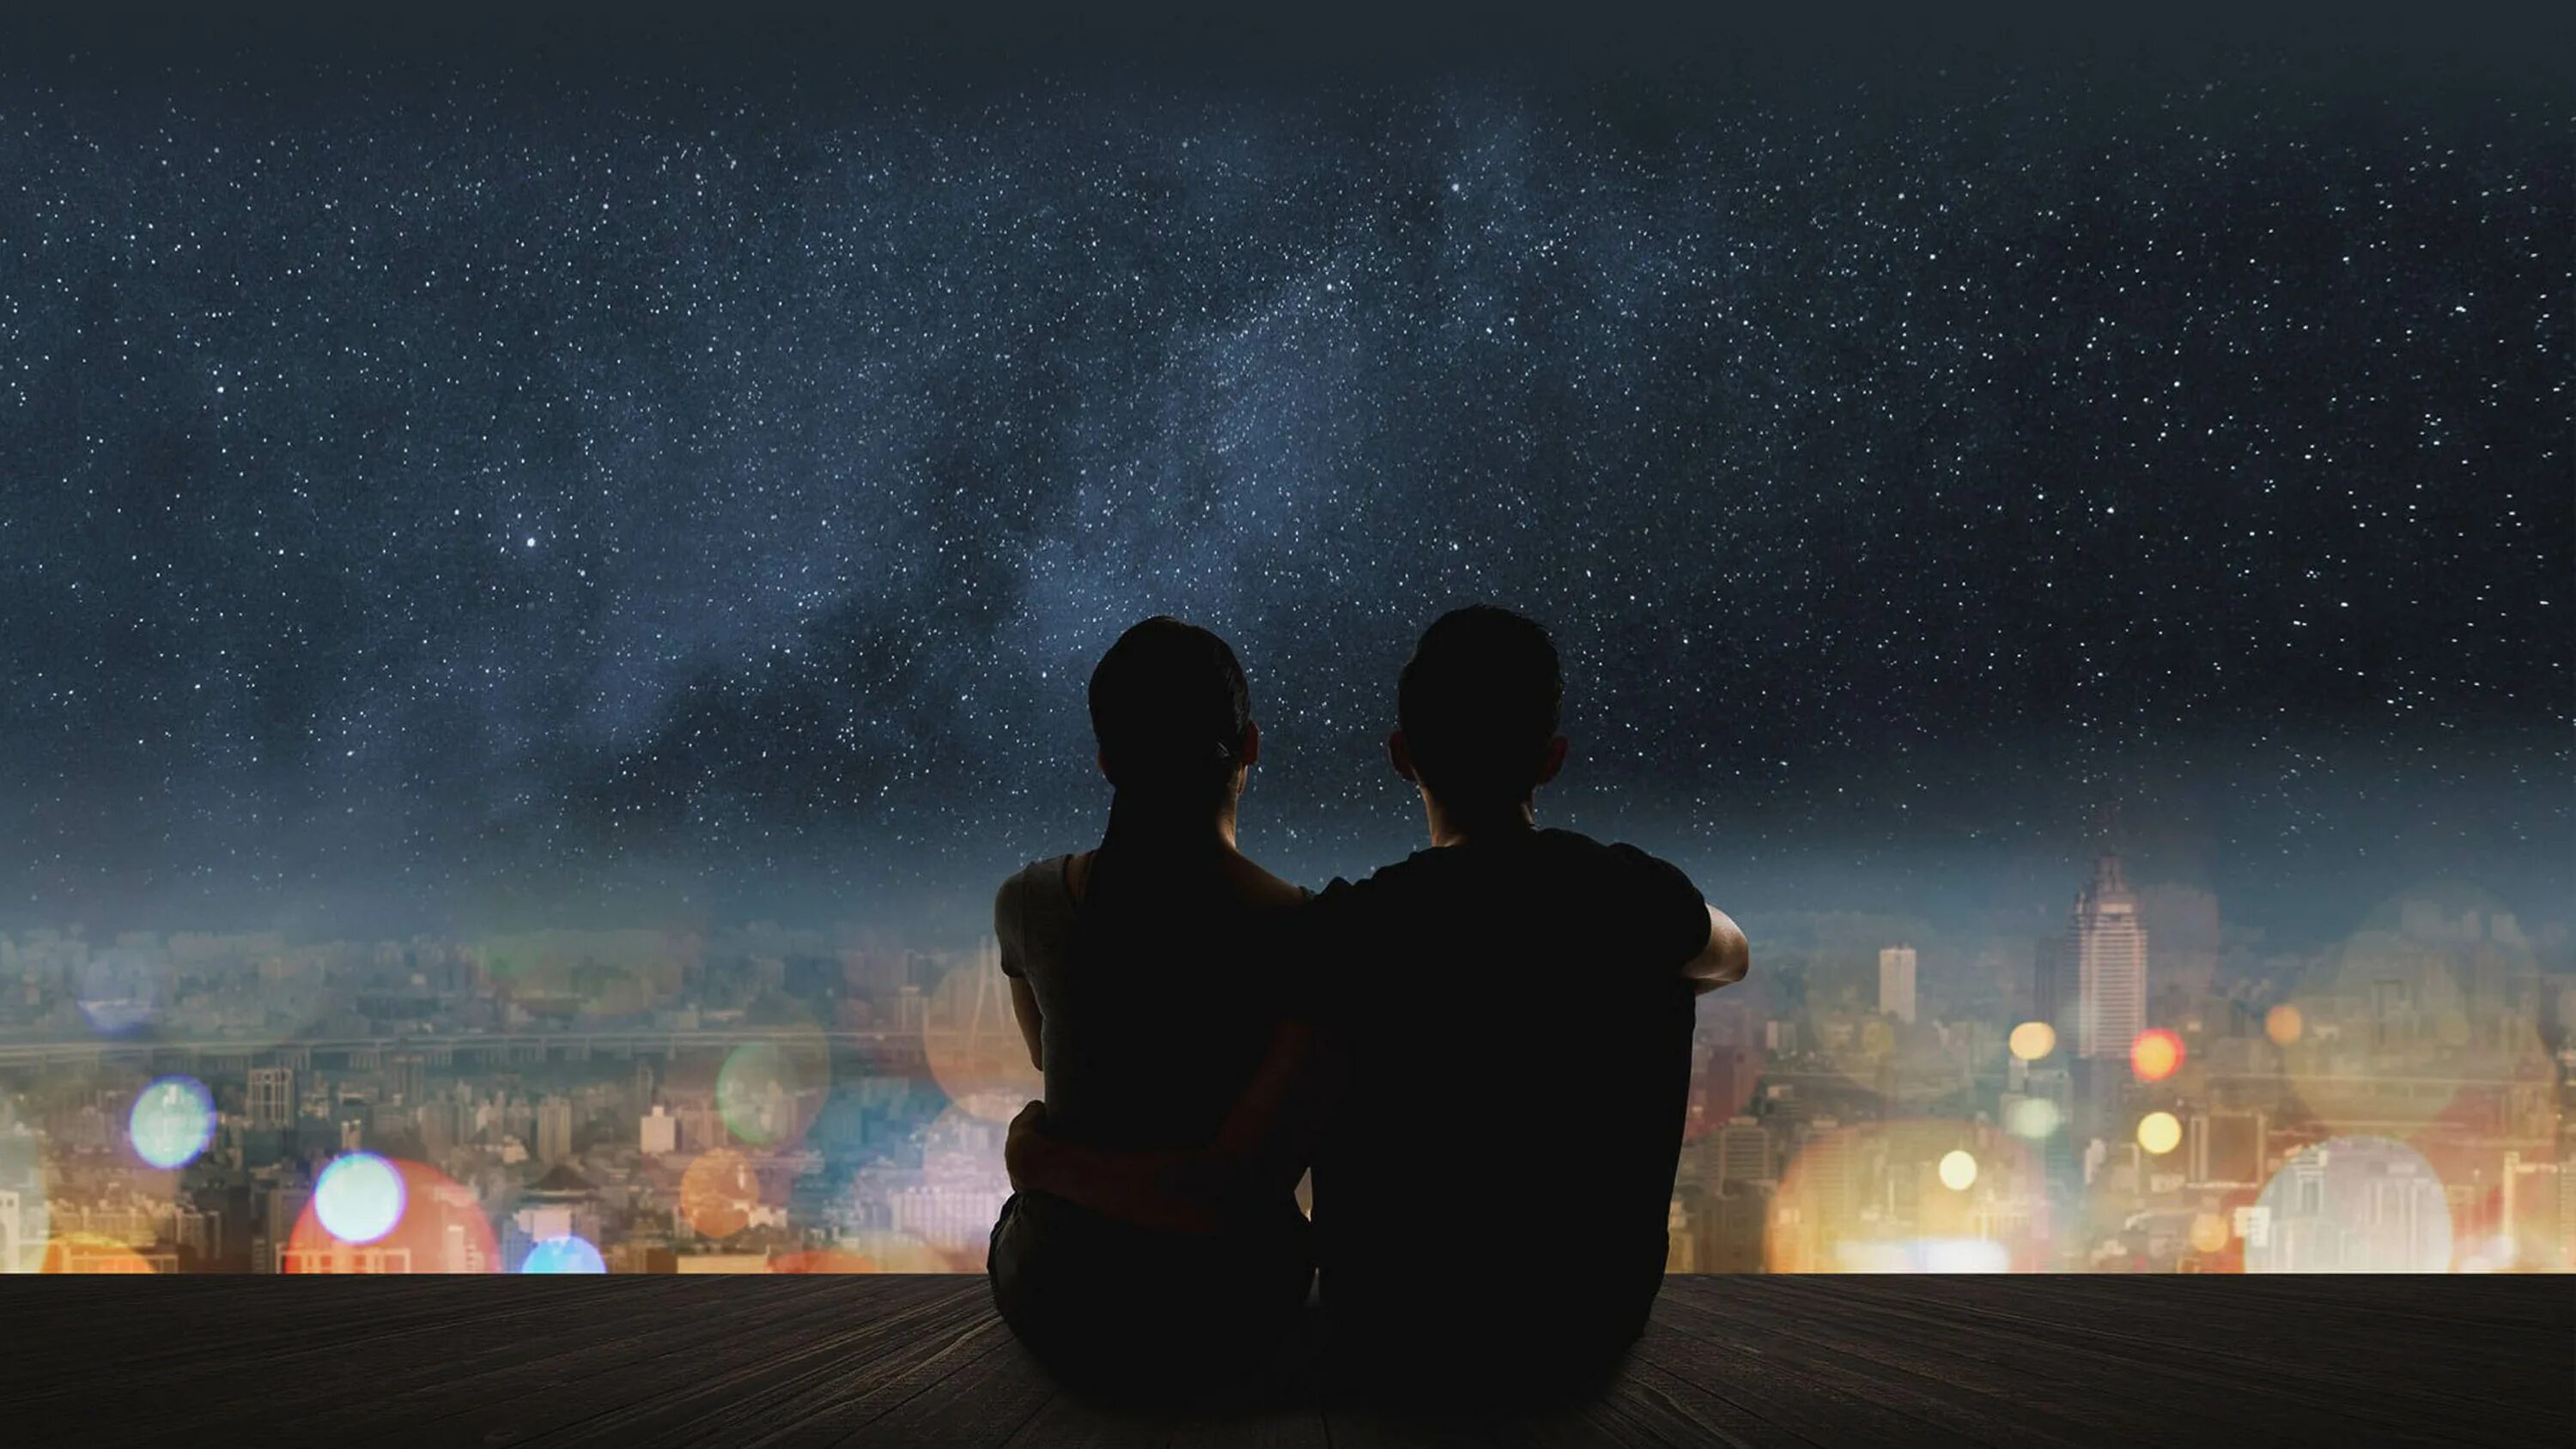 Песня звезды спят на крышах. Пара на фоне ночного неба. Звездное небо и влюбленные. Пара на фоне ночи. Пара на фоне звездного неба.